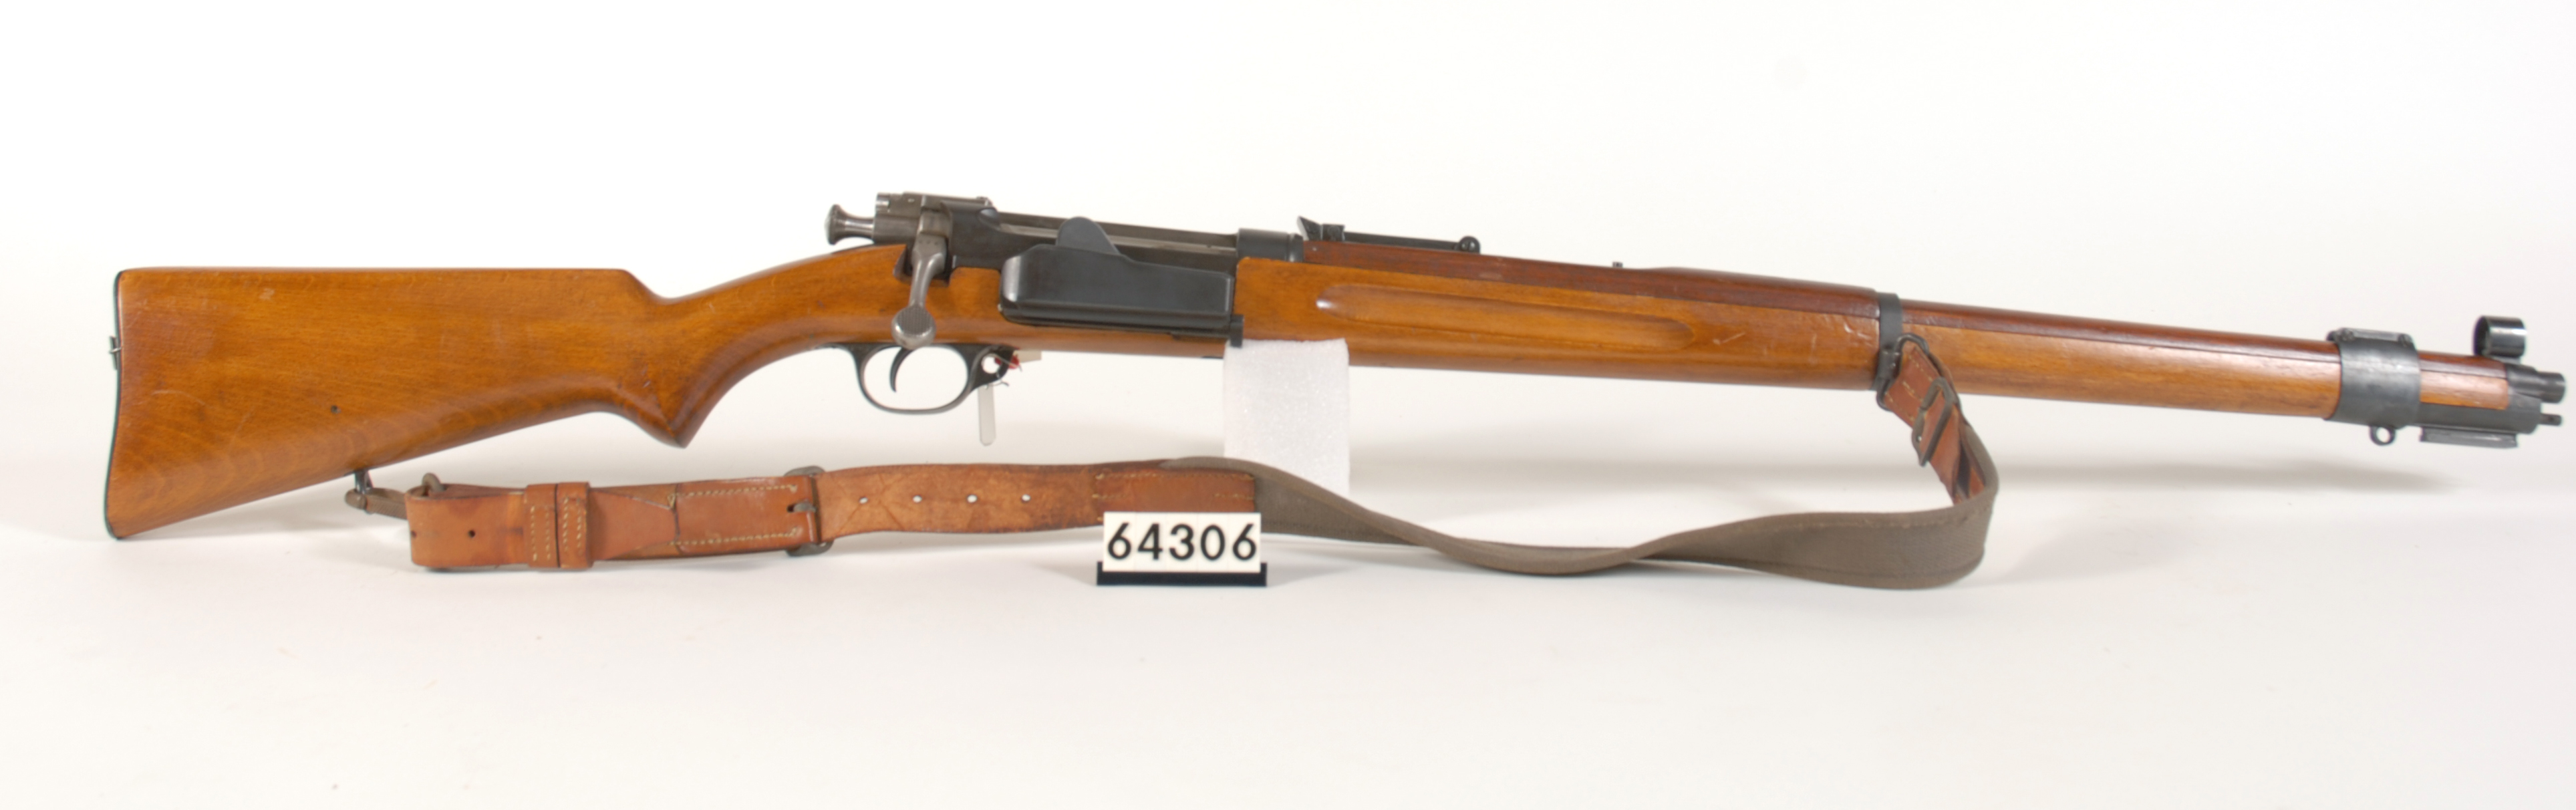 ./guns/rifle/bilder/Rifle-Kongsberg-Krag-M1912-FMU.064306.jpg